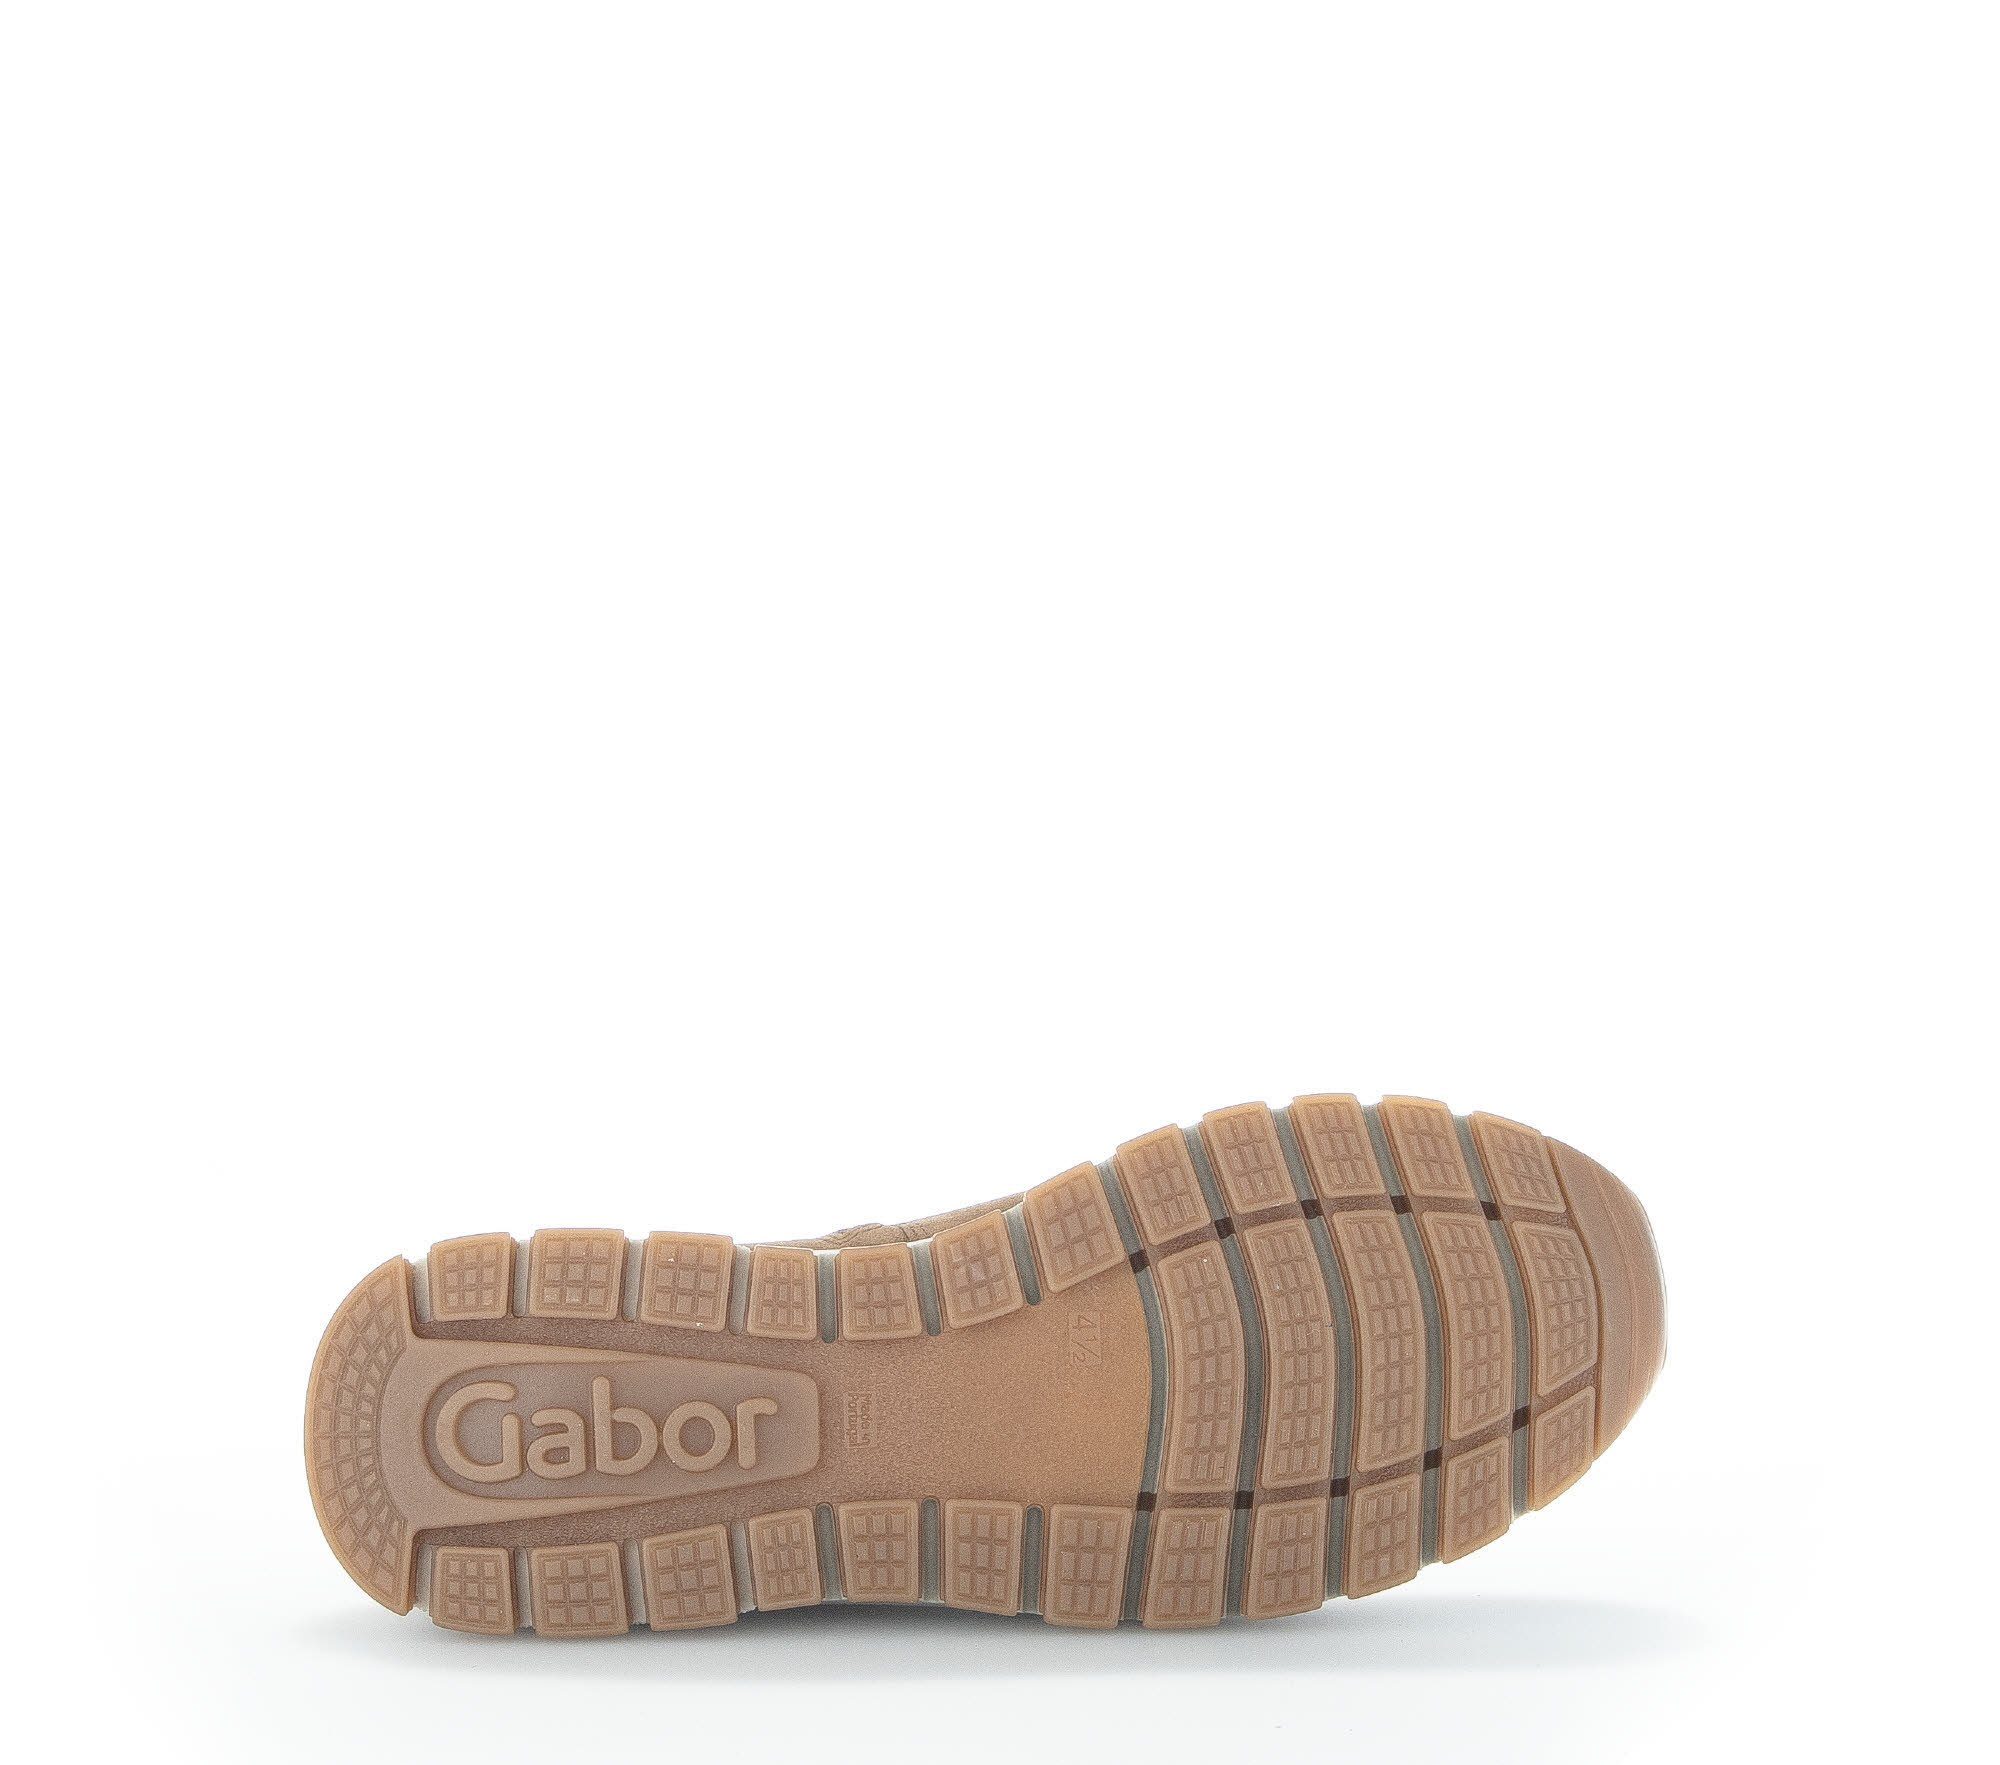 Chelseaboots (lion) Braun Gabor 93.550.14